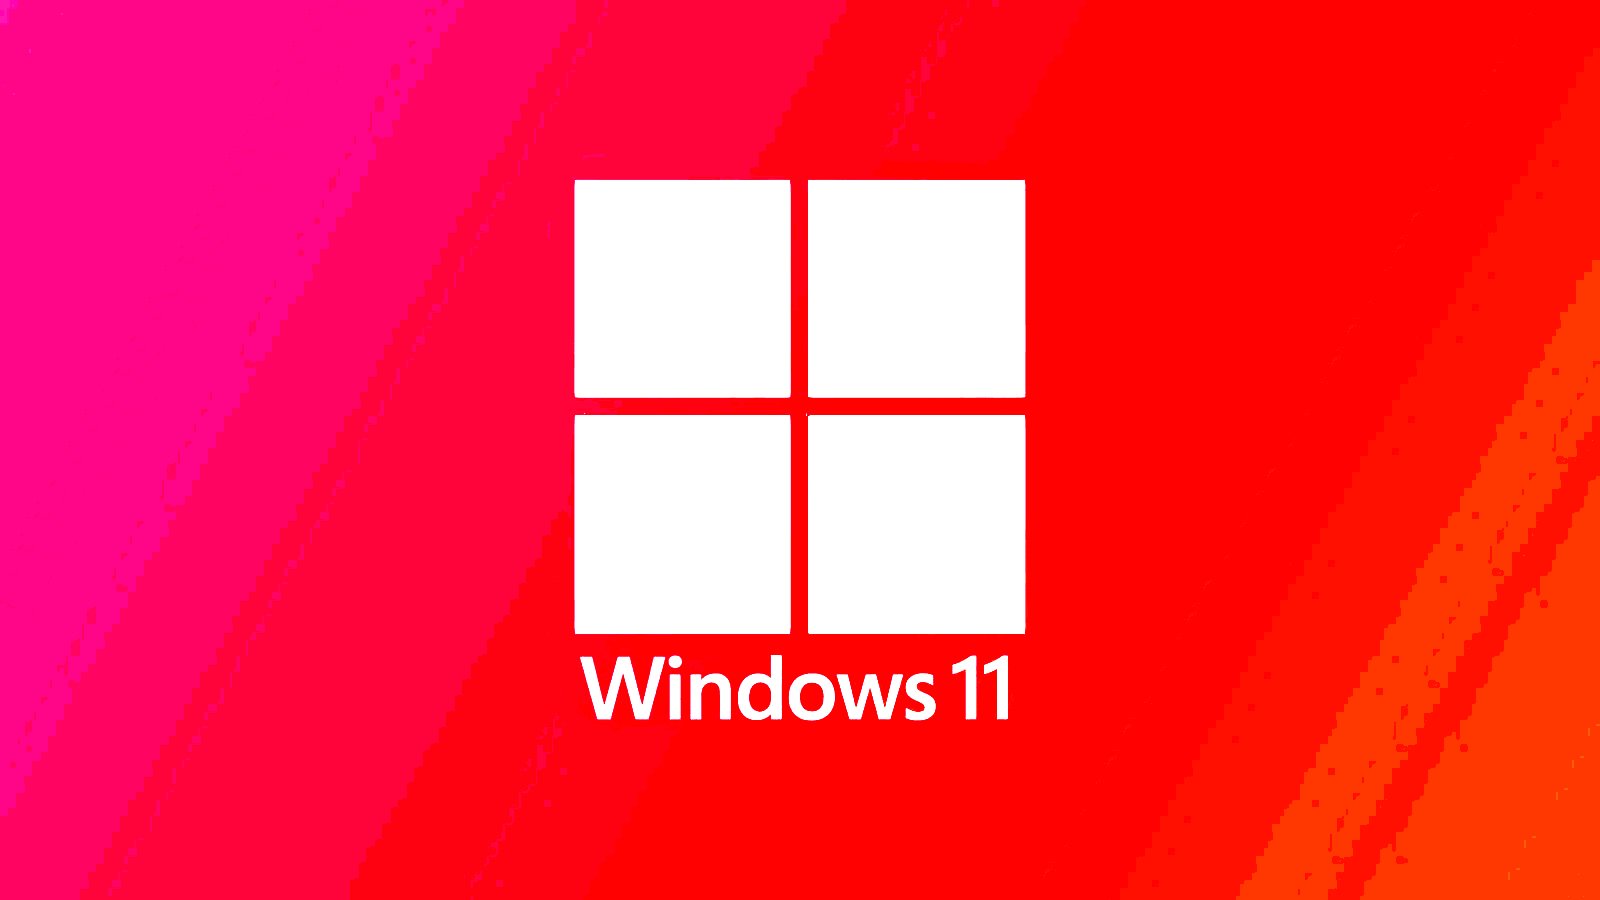 December's Windows 11 KB5033375 update breaks Wi-Fi connectivity